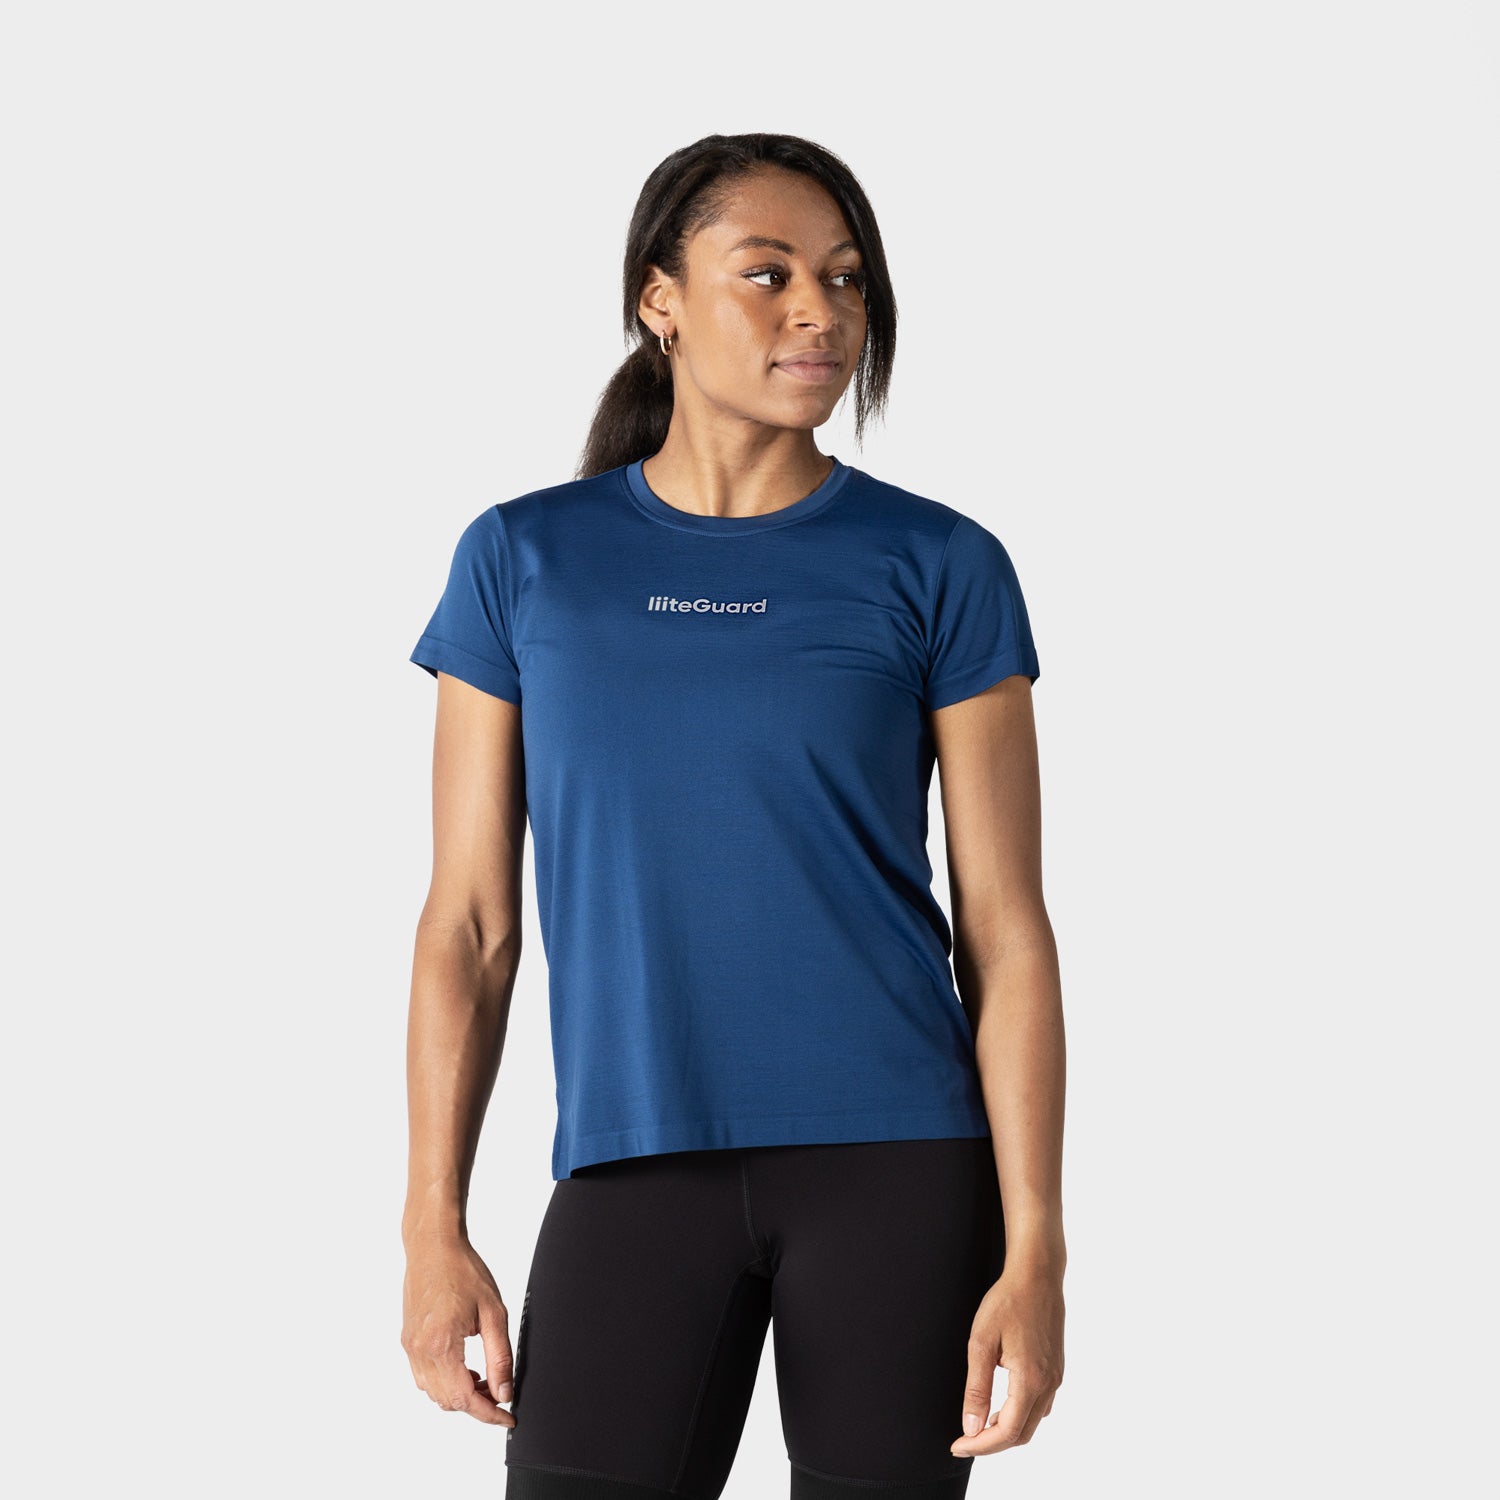 Se liiteGuard T-shirt | Blå | Str. L | Kvinder hos liiteGuard